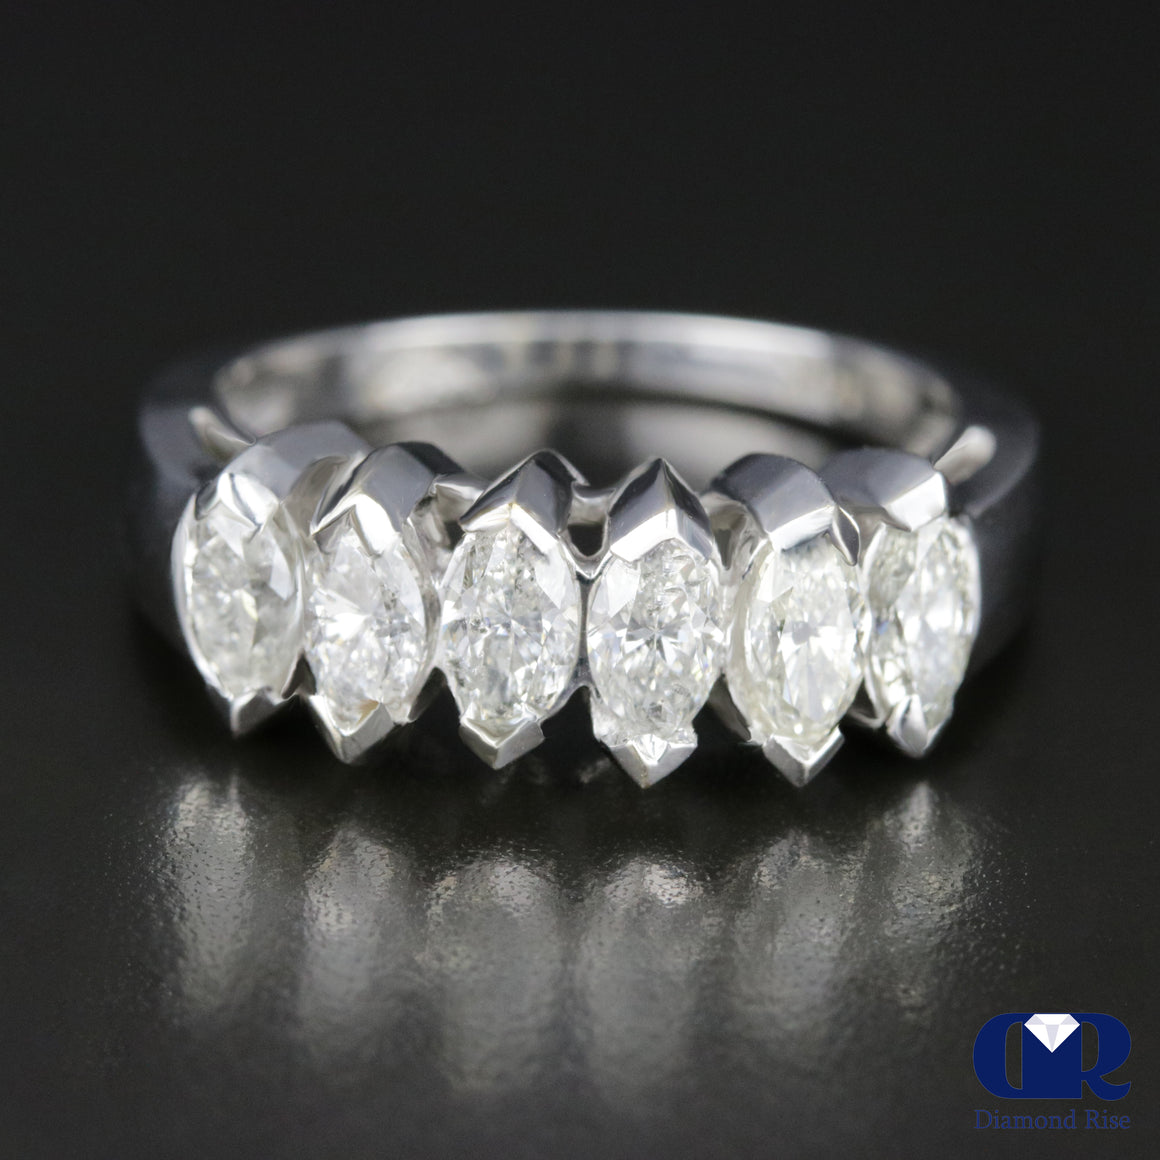 Women's Marquise Diamond Anniversary Ring & Wedding Band In 14K White Gold - Diamond Rise Jewelry